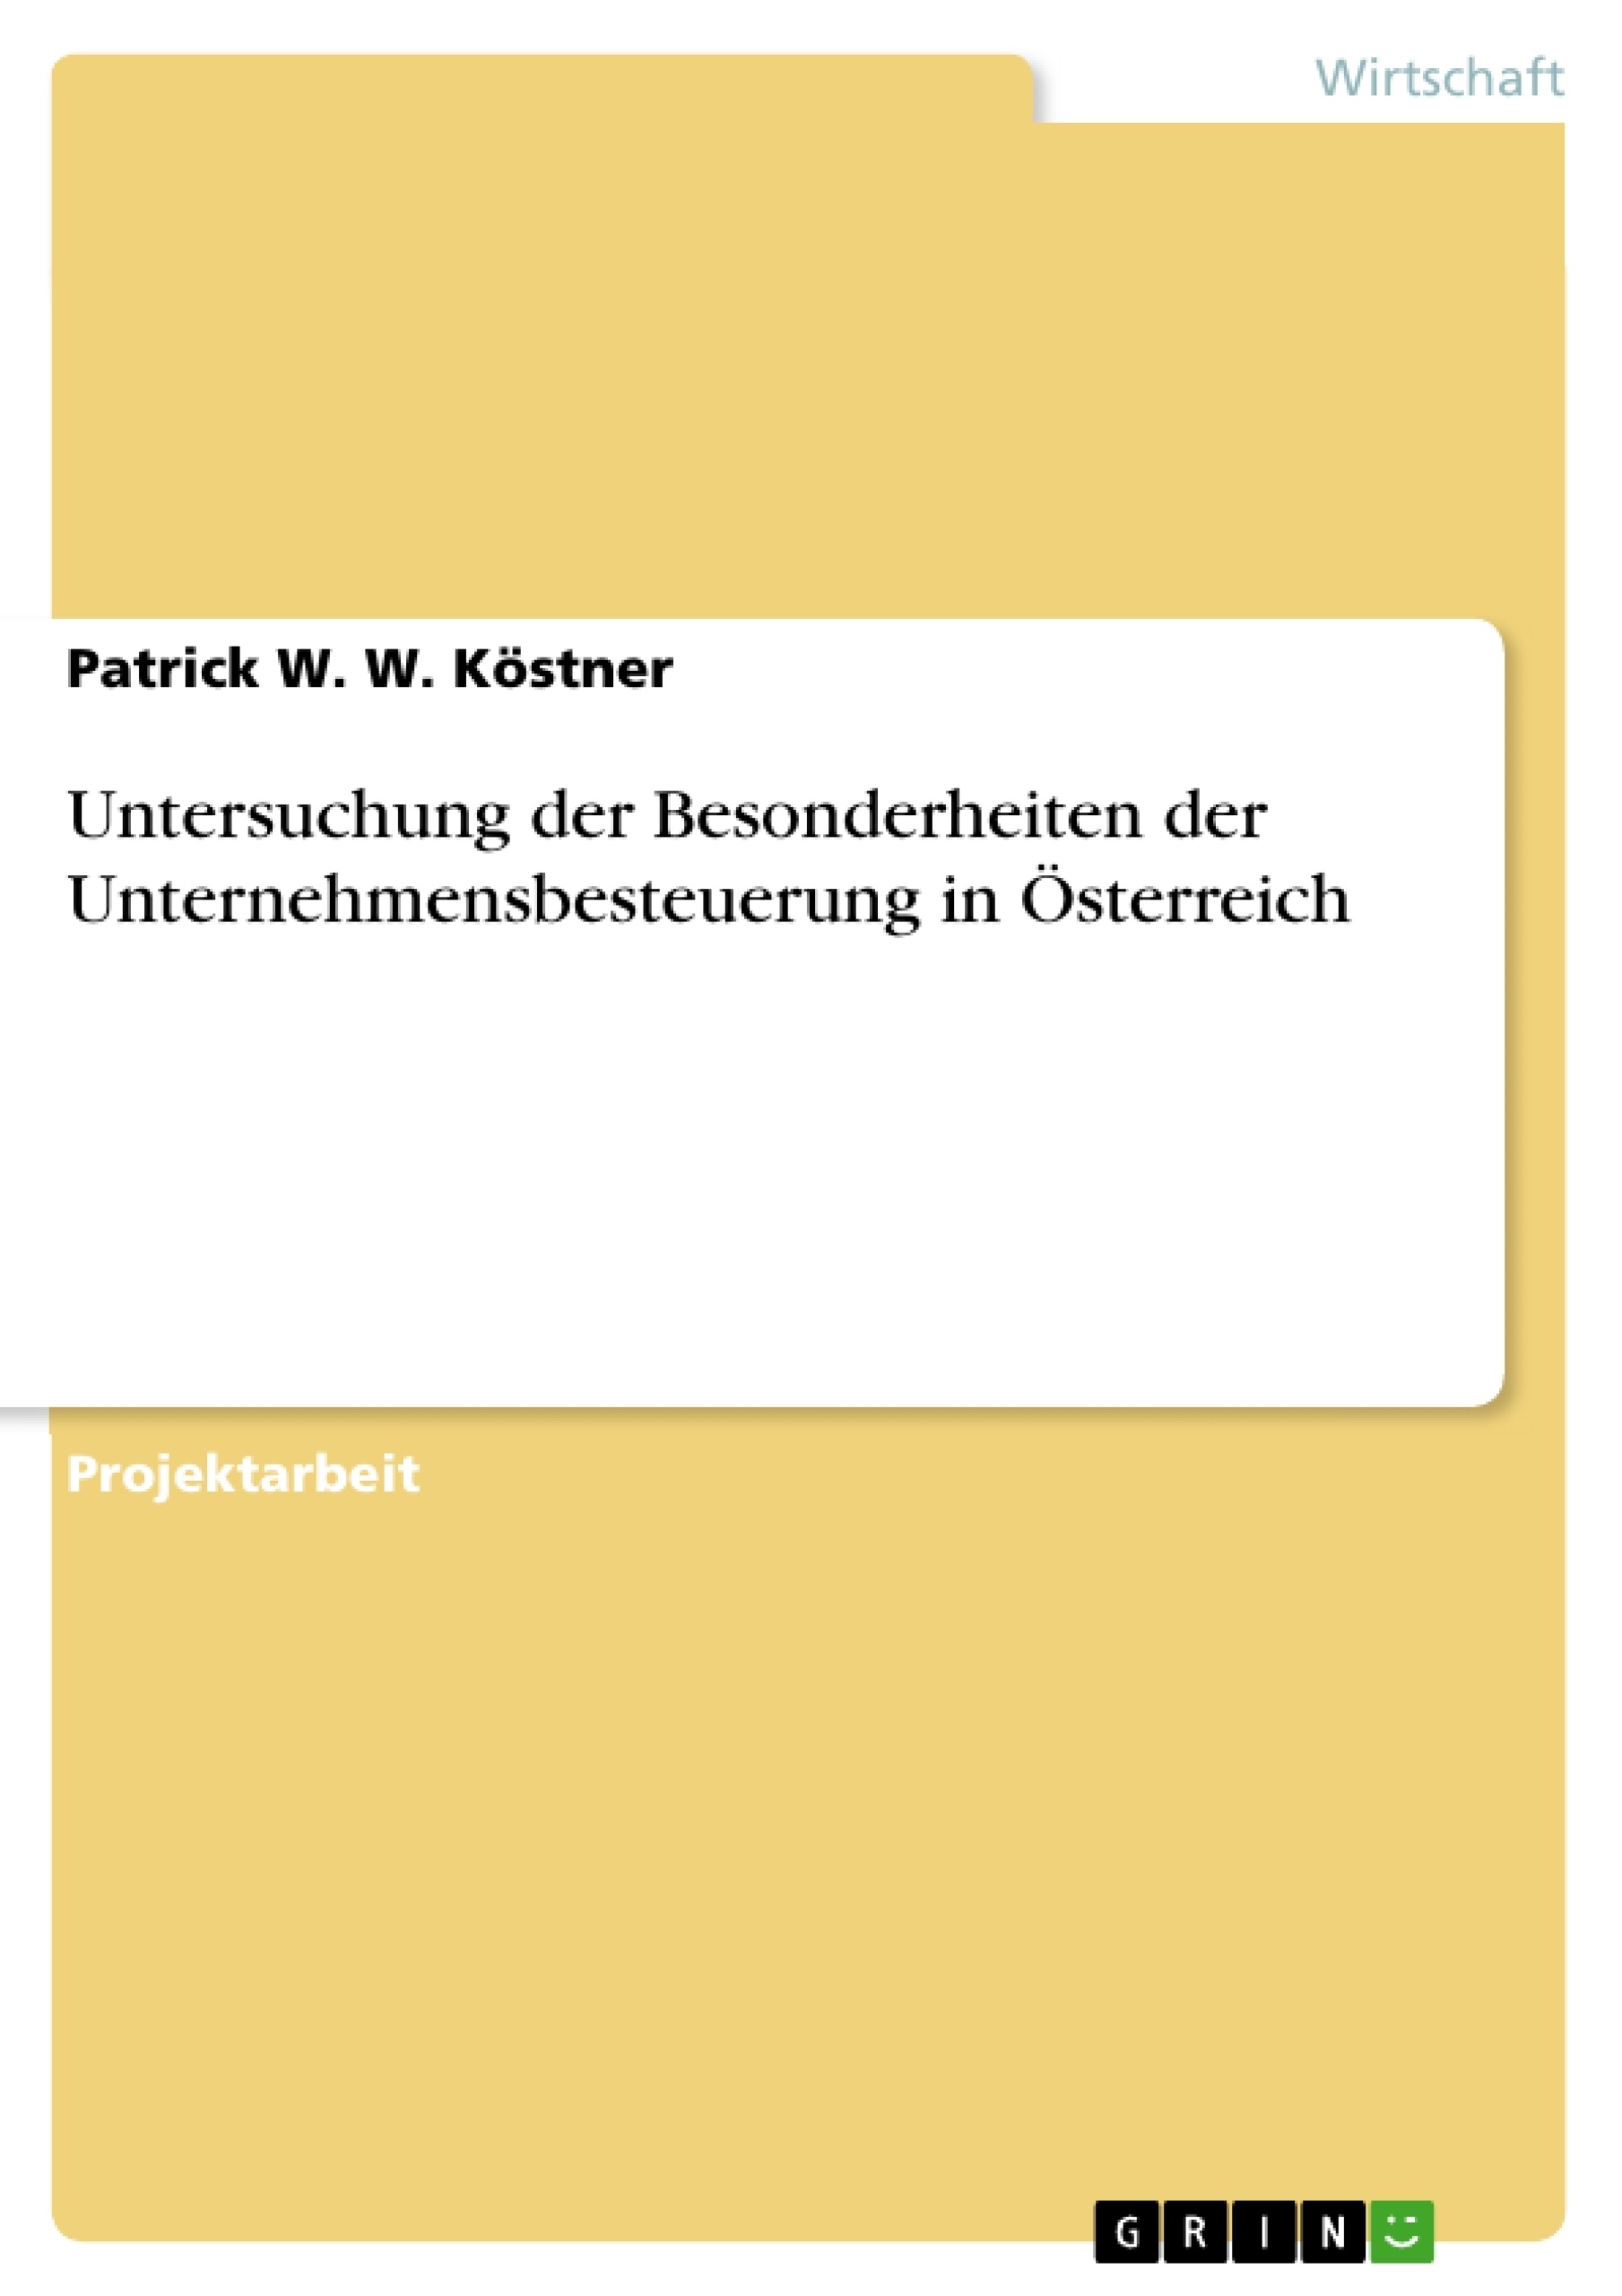 Title: Untersuchung der Besonderheiten der Unternehmensbesteuerung in Österreich